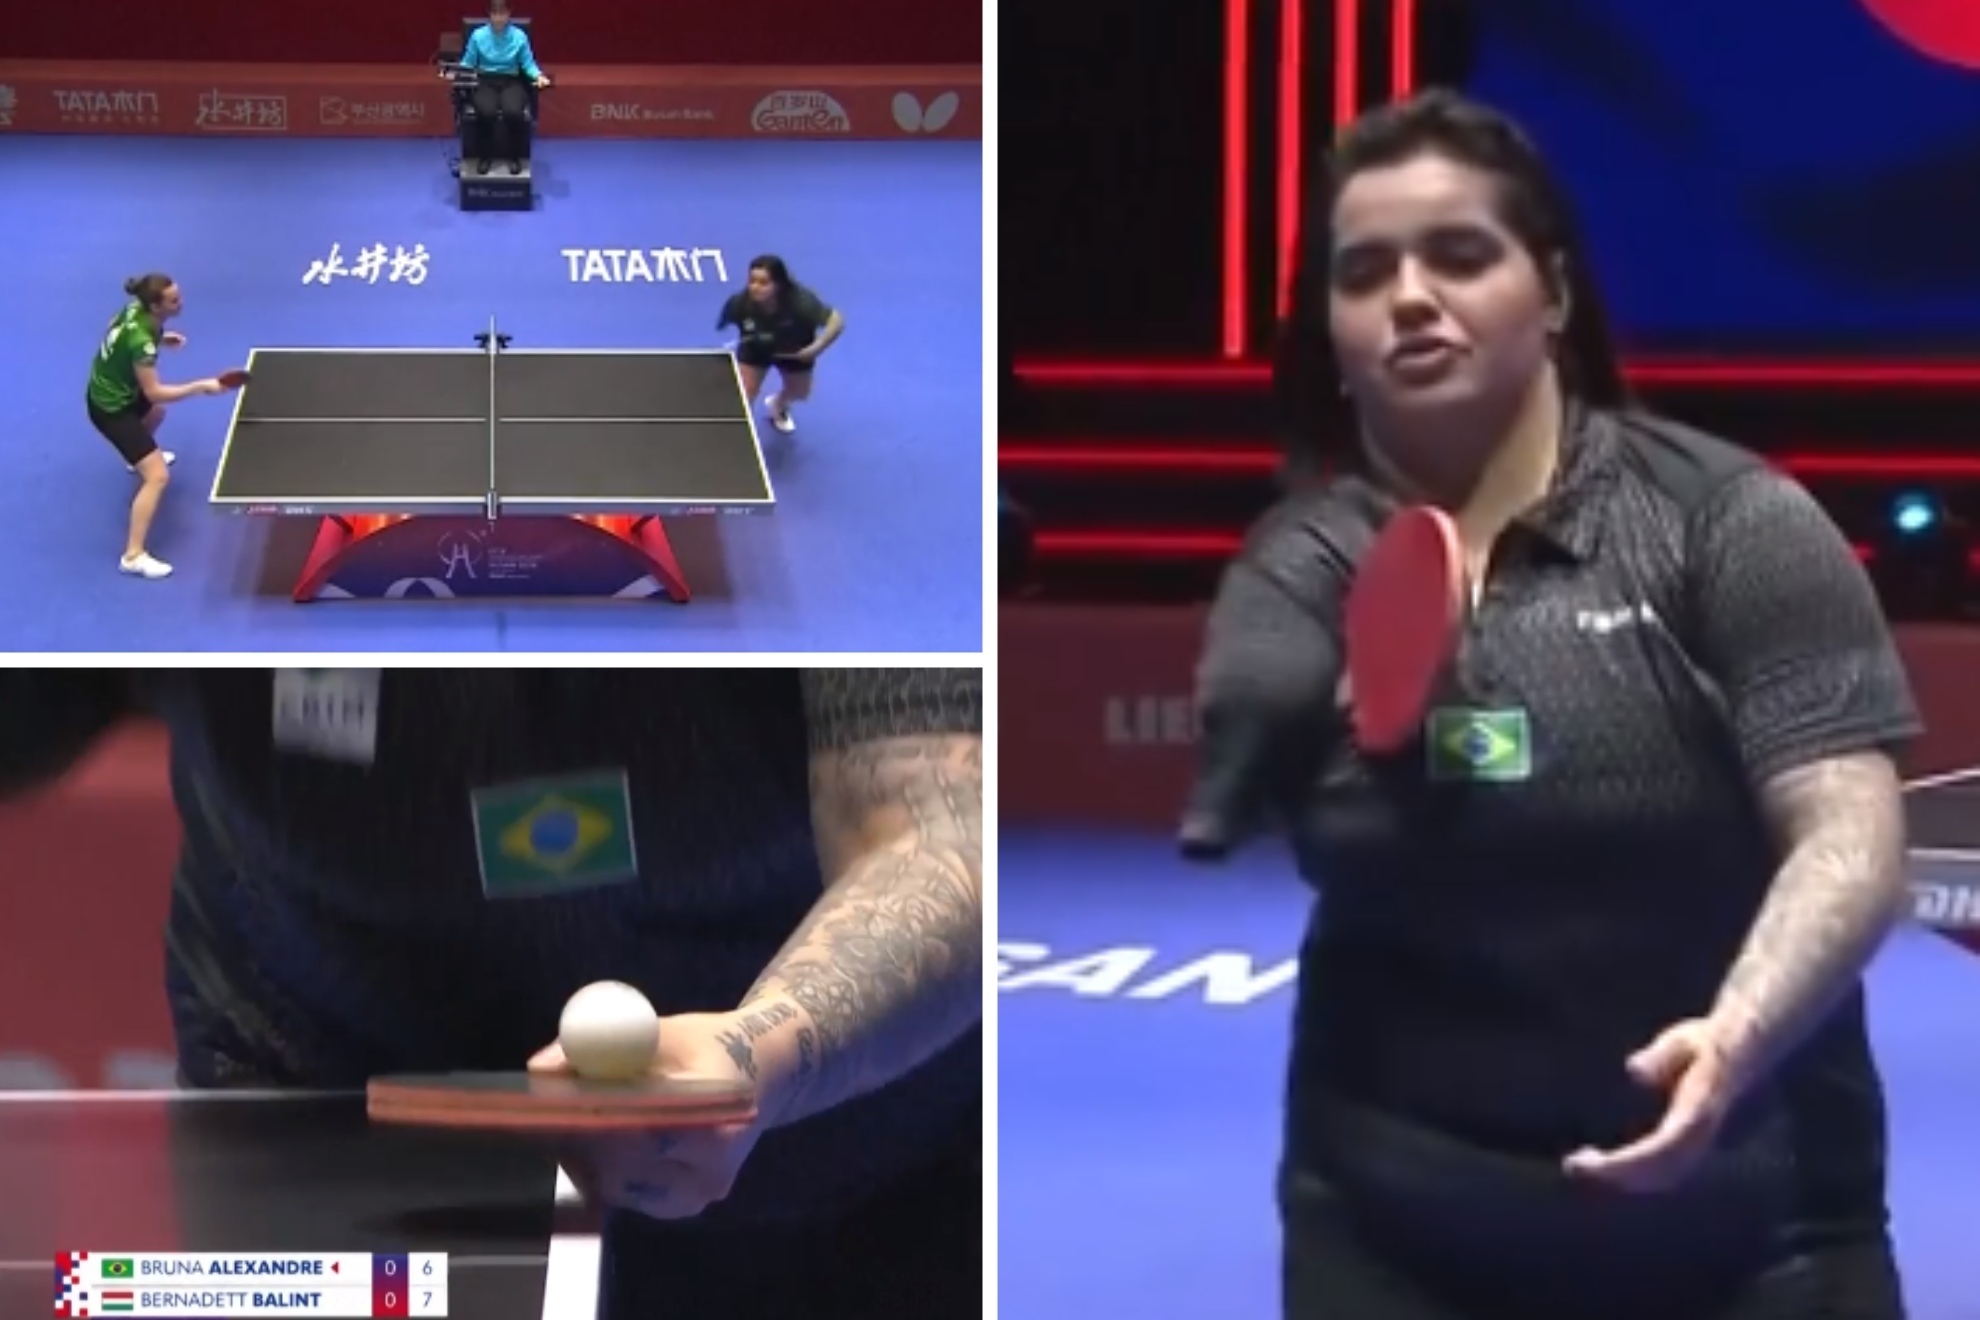 Bruna Alexandre hace historia del tenis de mesa jugando (¡y ganando!) con un solo brazo